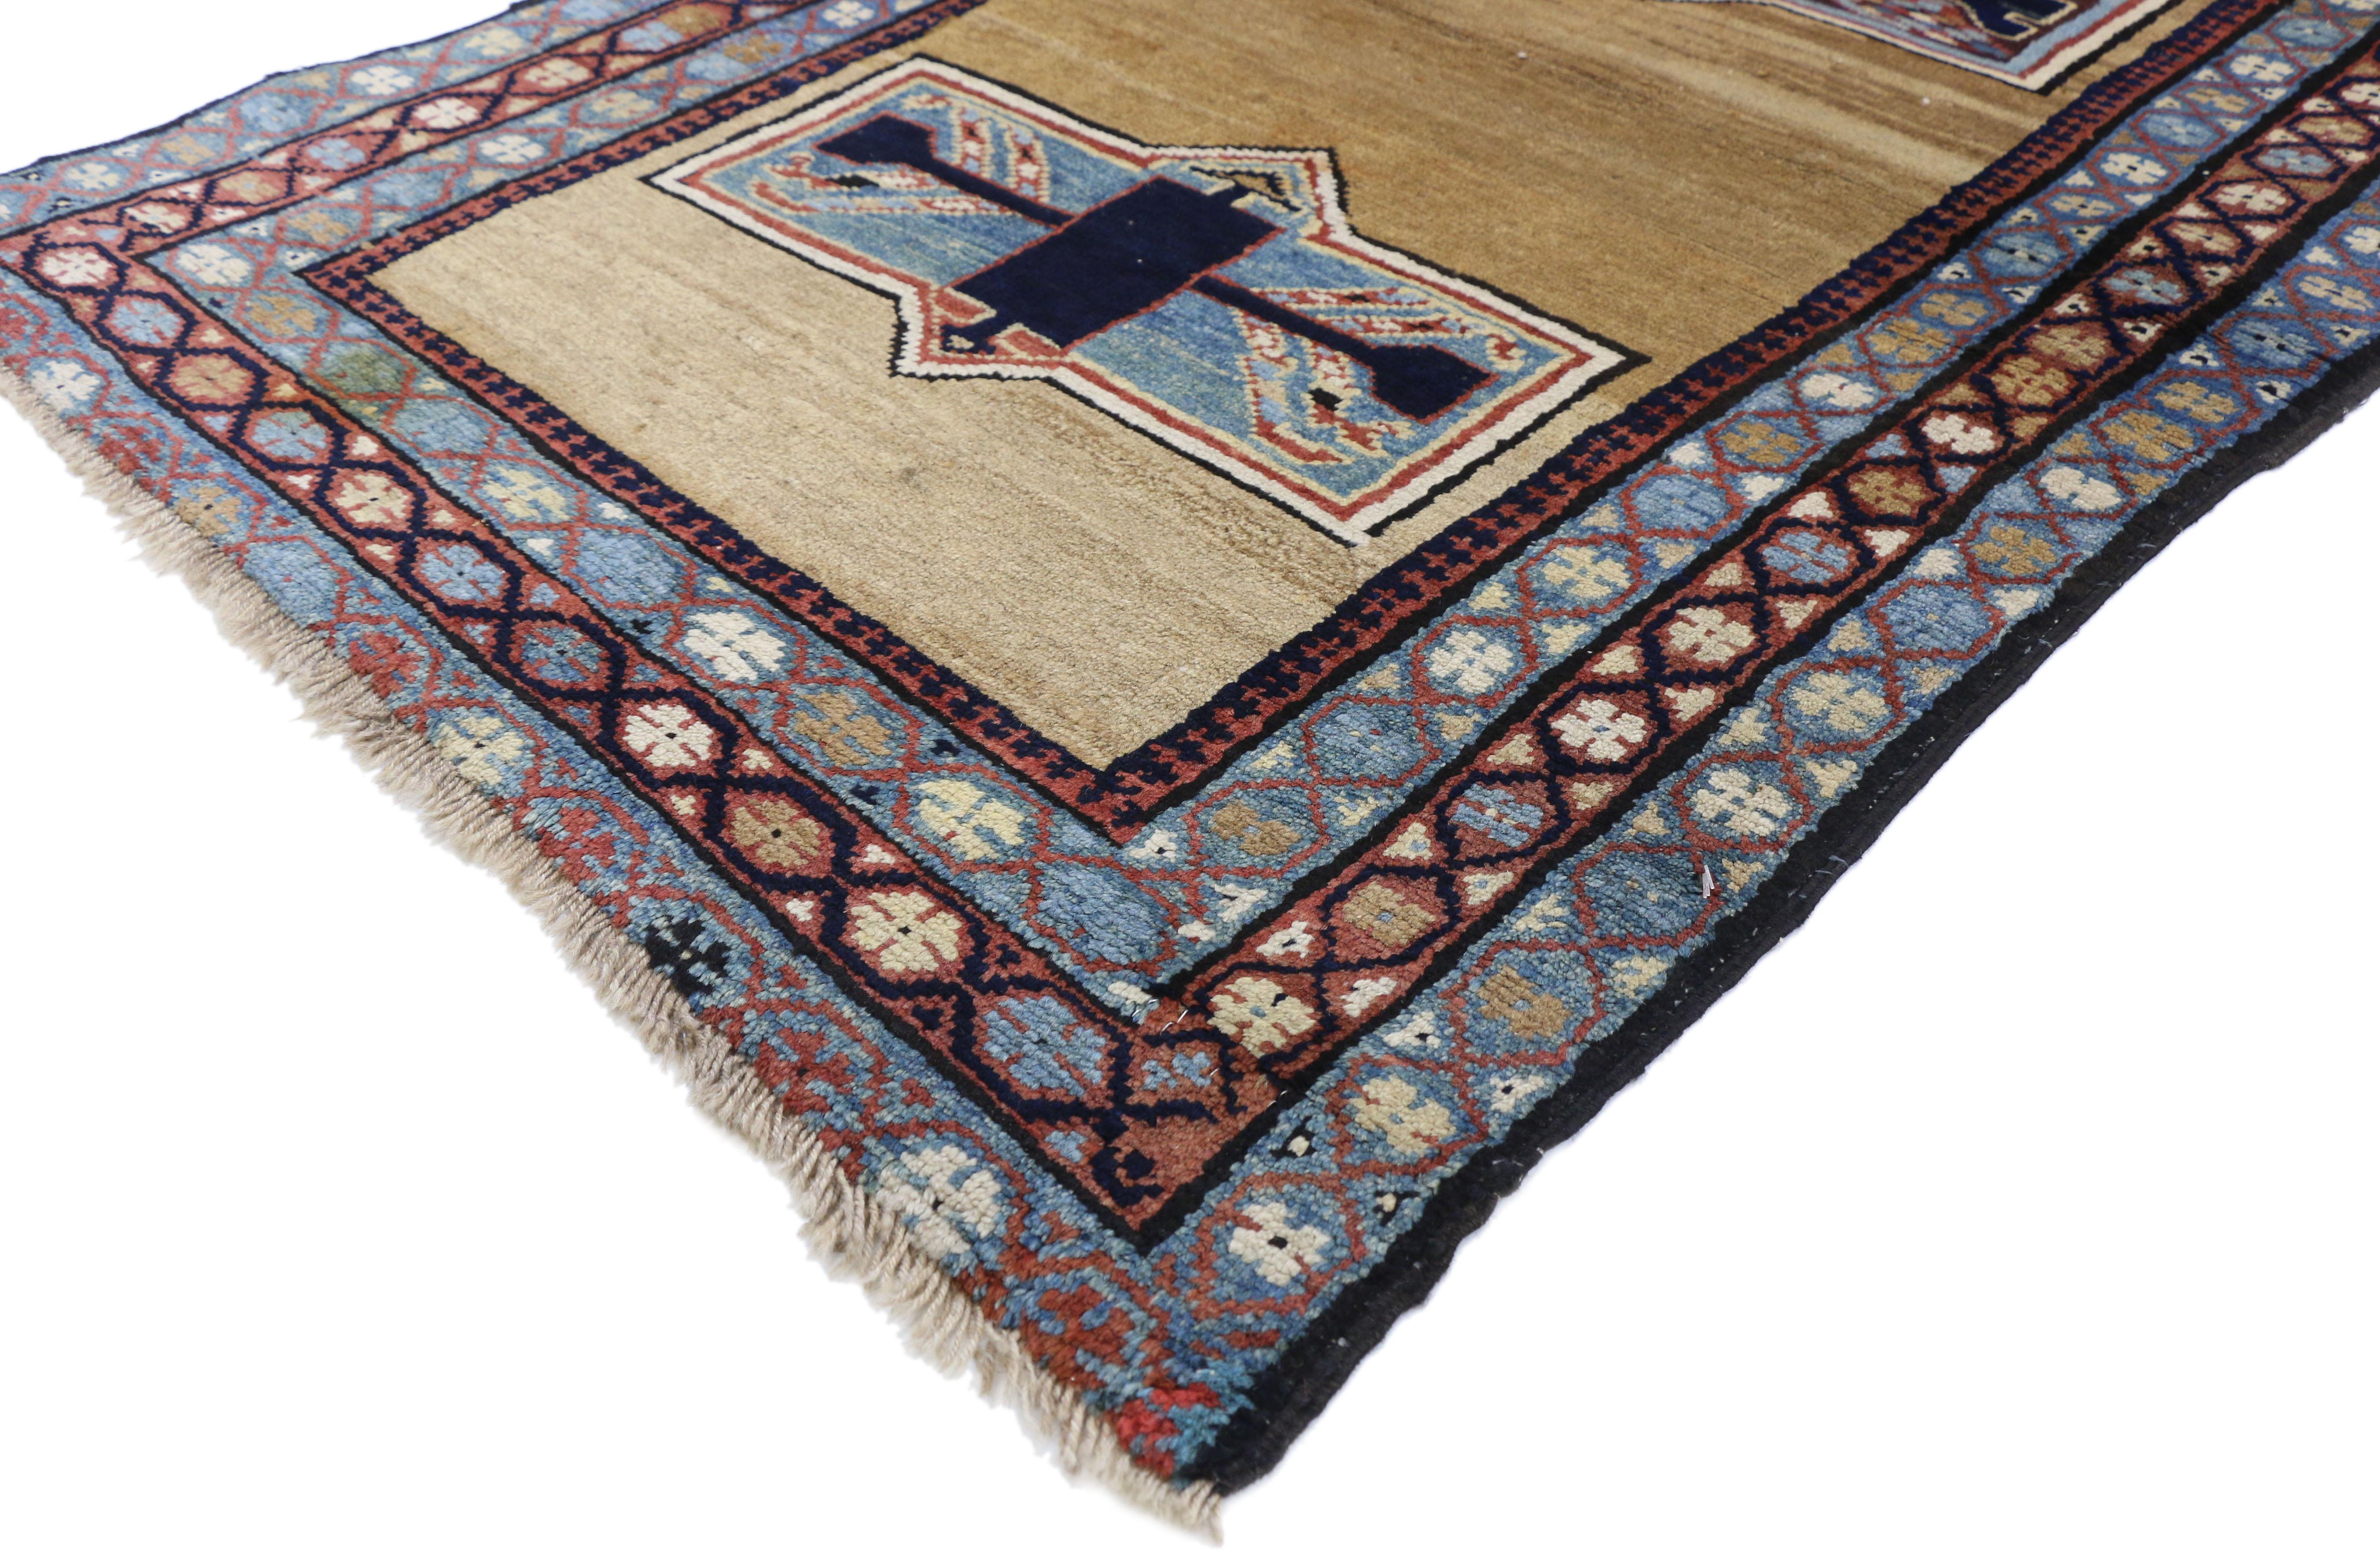 75633, ancien tapis persan d'Azerbaïdjan au style tribal moderne du milieu du siècle. Ce tapis ancien persan d'Azerbaïdjan en laine nouée à la main présente deux médaillons décagonaux flottant sur un champ beige abrasé. Deux rectangles portant des